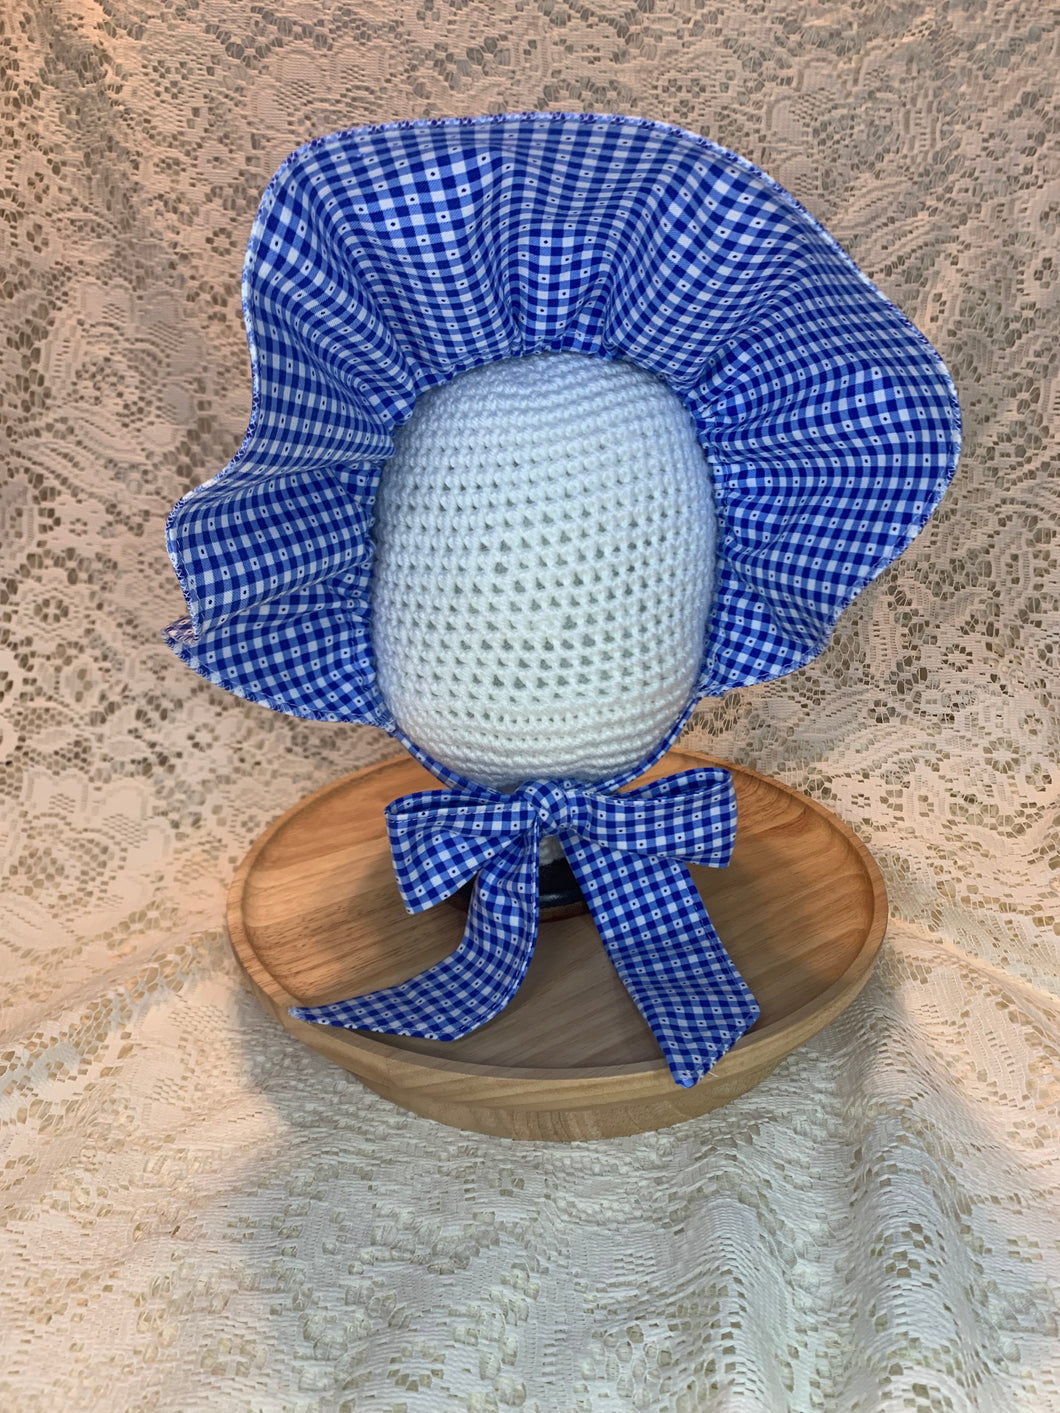 Vintage Bonnet - Blue & White Gingham Bonnet